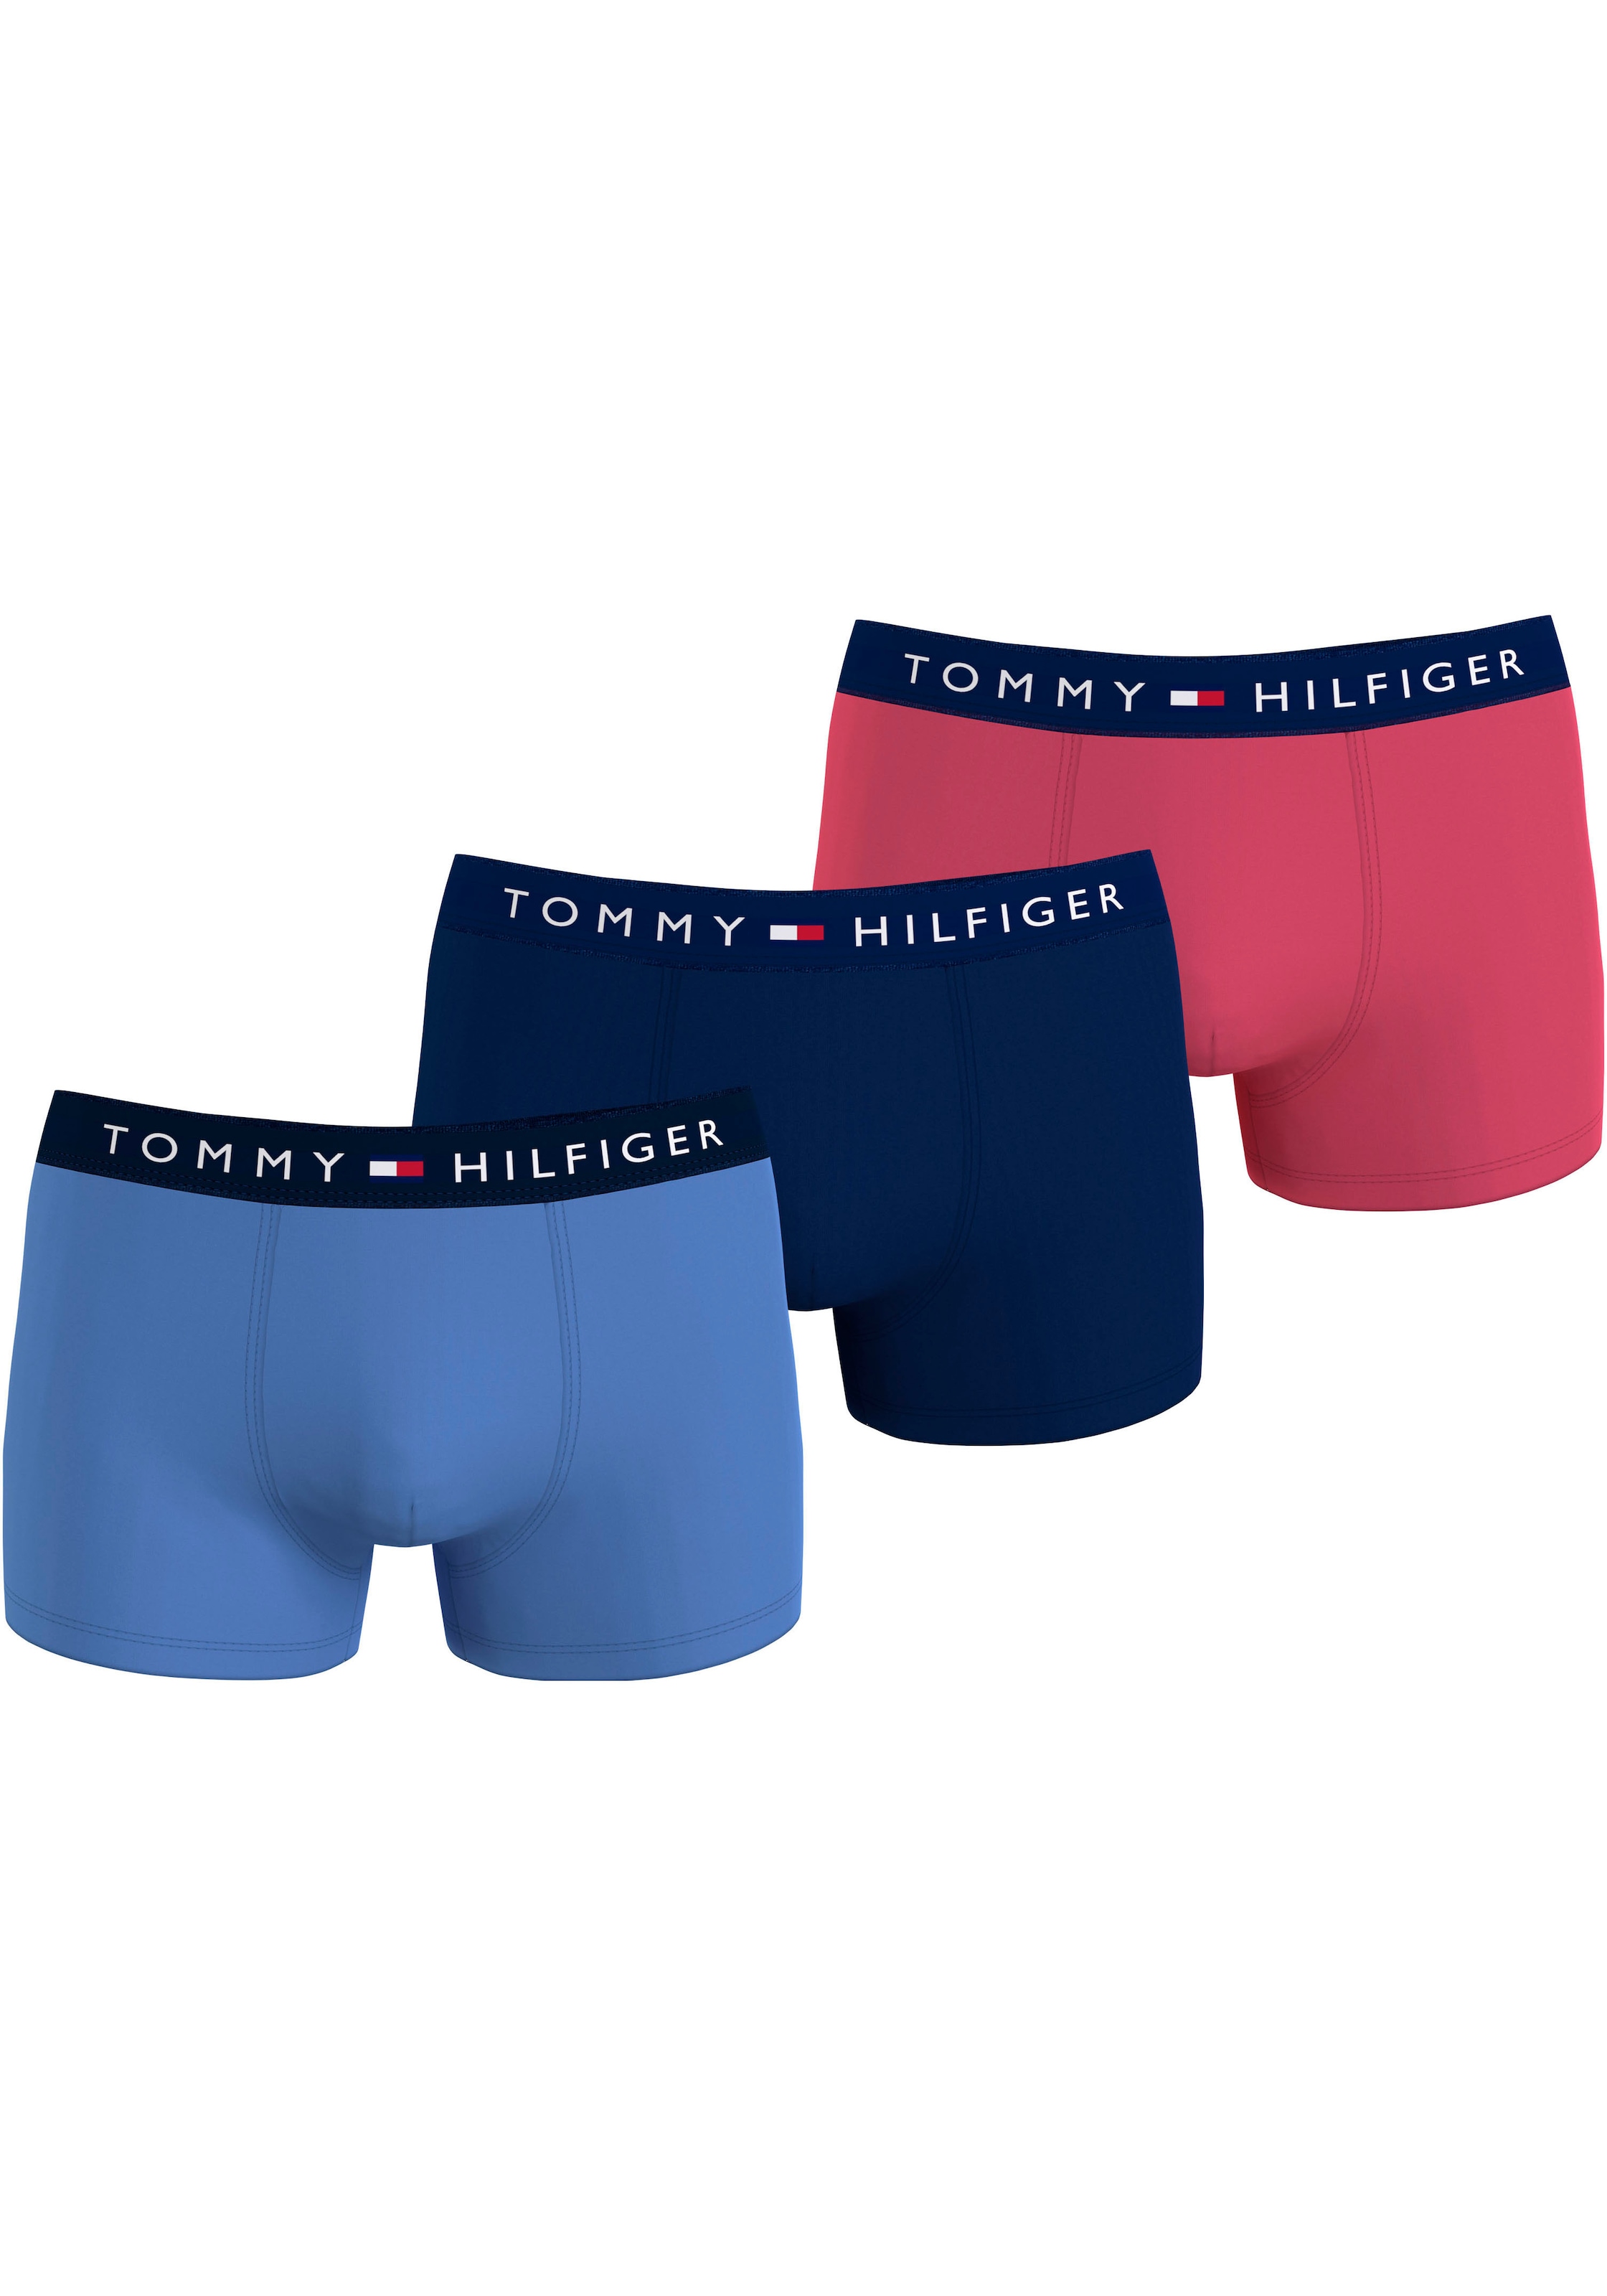 TOMMY HILFIGER Underwear Trunk »3P TRUNK« (Packung 3 St. 3er) s...